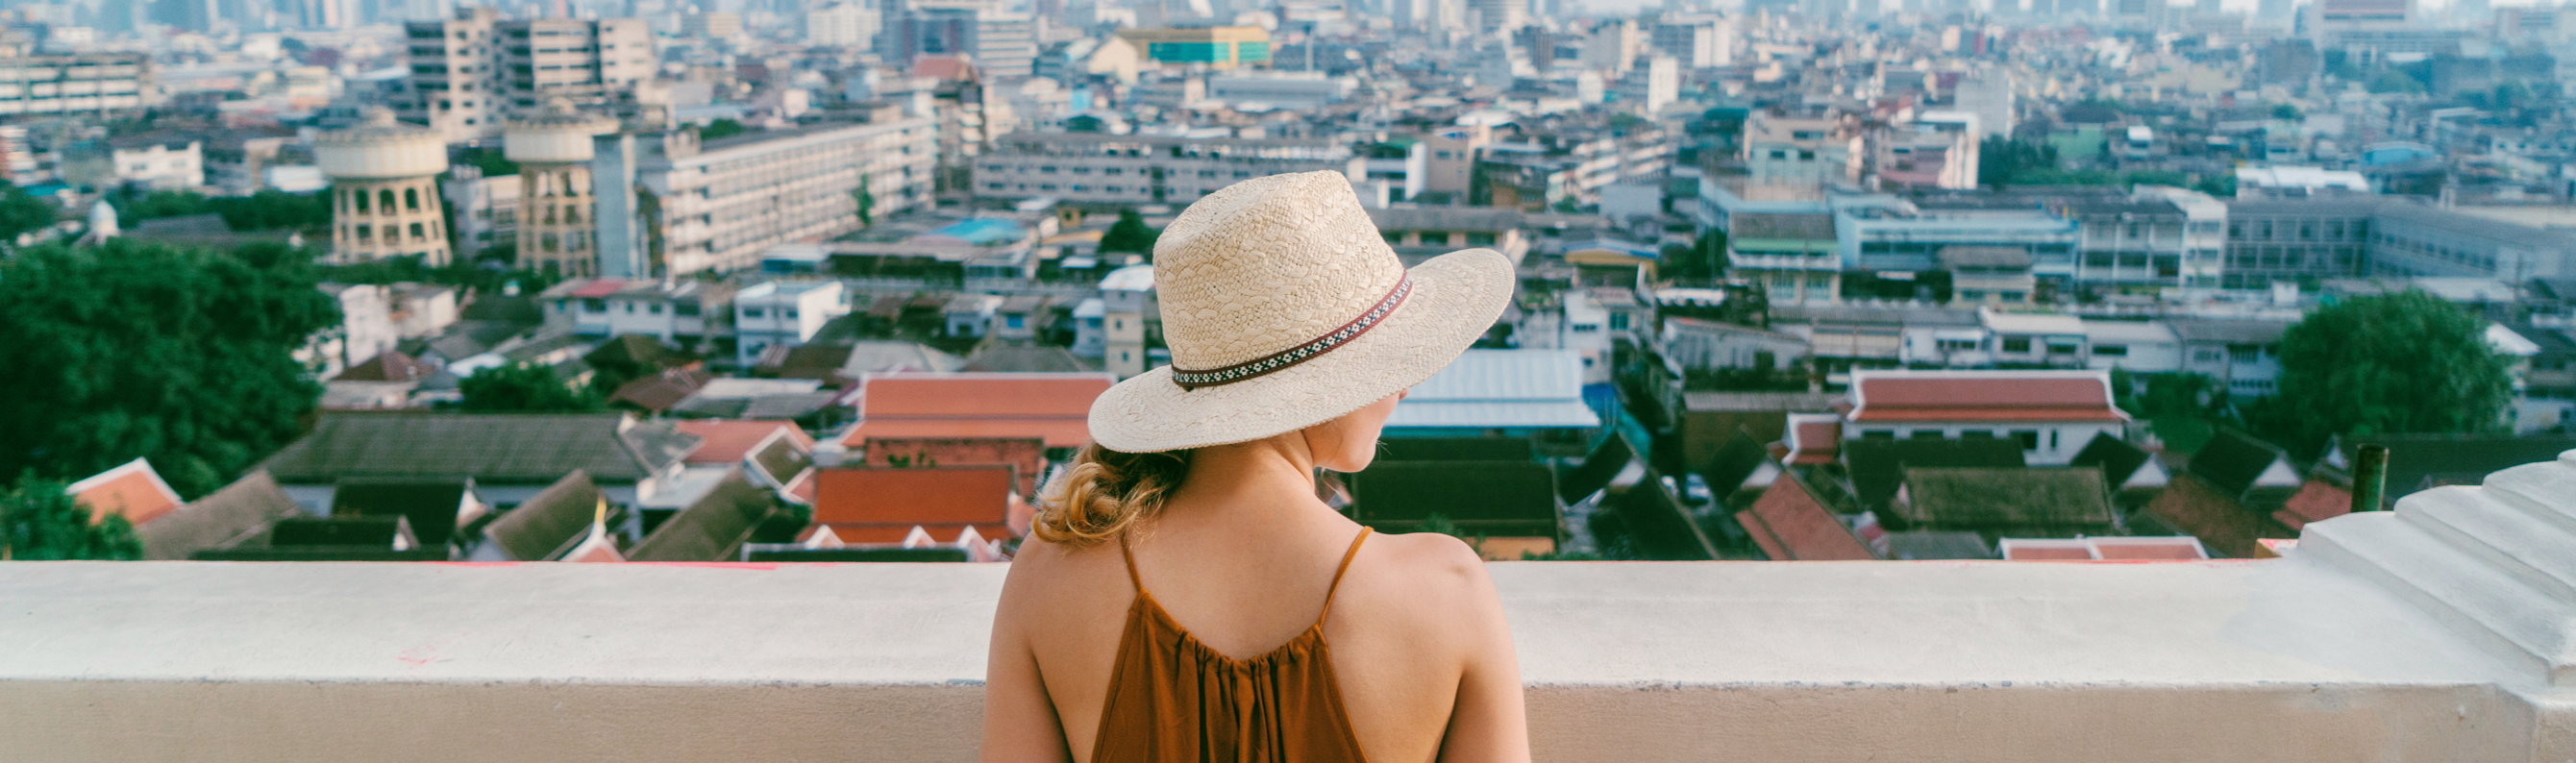 Frau mit Hut überblickt eine dichte Stadt.